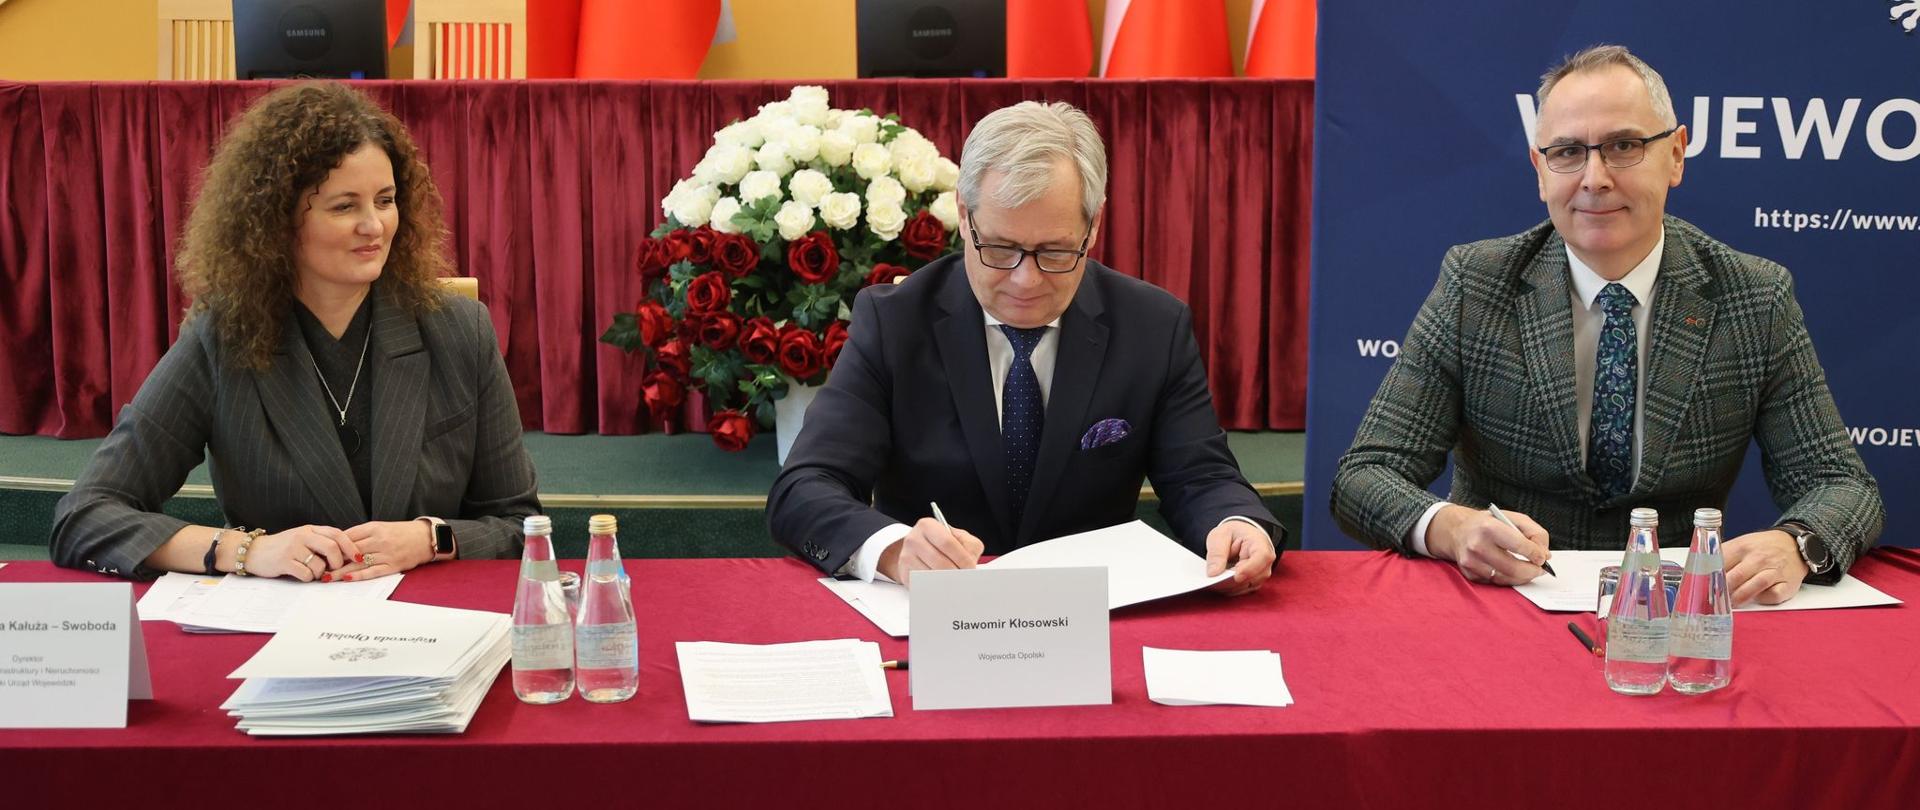 Przy stole prezydialnym zasiadają (od prawej) dyrektor Wydziału Infrastruktury i Nieruchomości OUW, Wojewoda Opolski oraz przedstawiciel samorządu. Wojewoda podpisuje umowę.